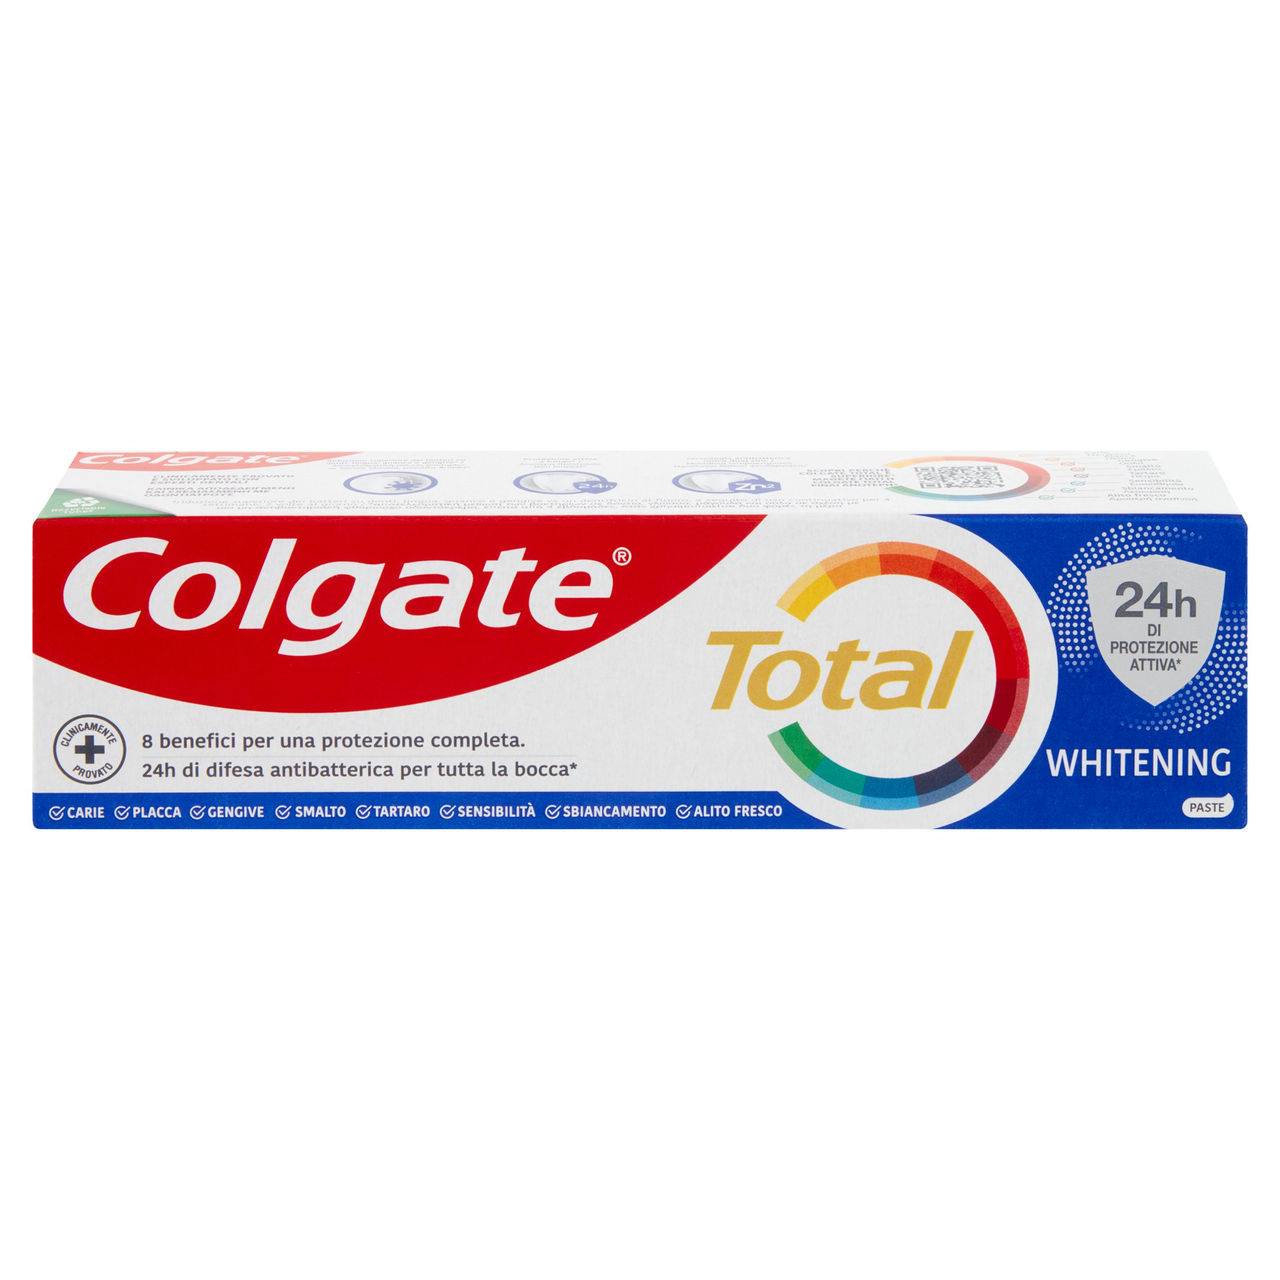 Colgate dentifricio Total Whitening protezione 24h